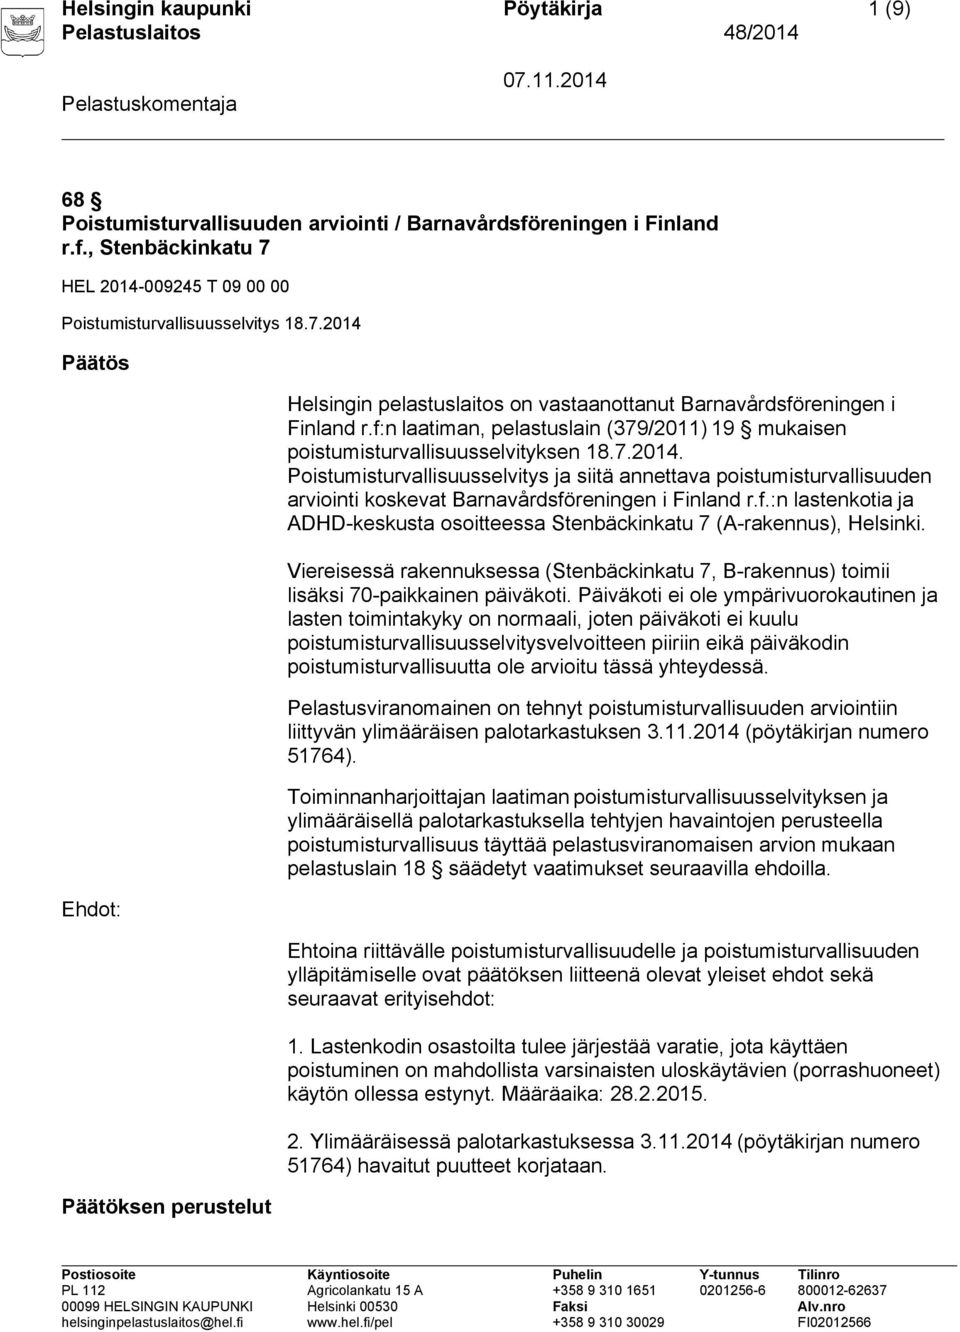 f:n laatiman, pelastuslain (379/2011) 19 mukaisen poistumisturvallisuusselvityksen 18.7.2014.